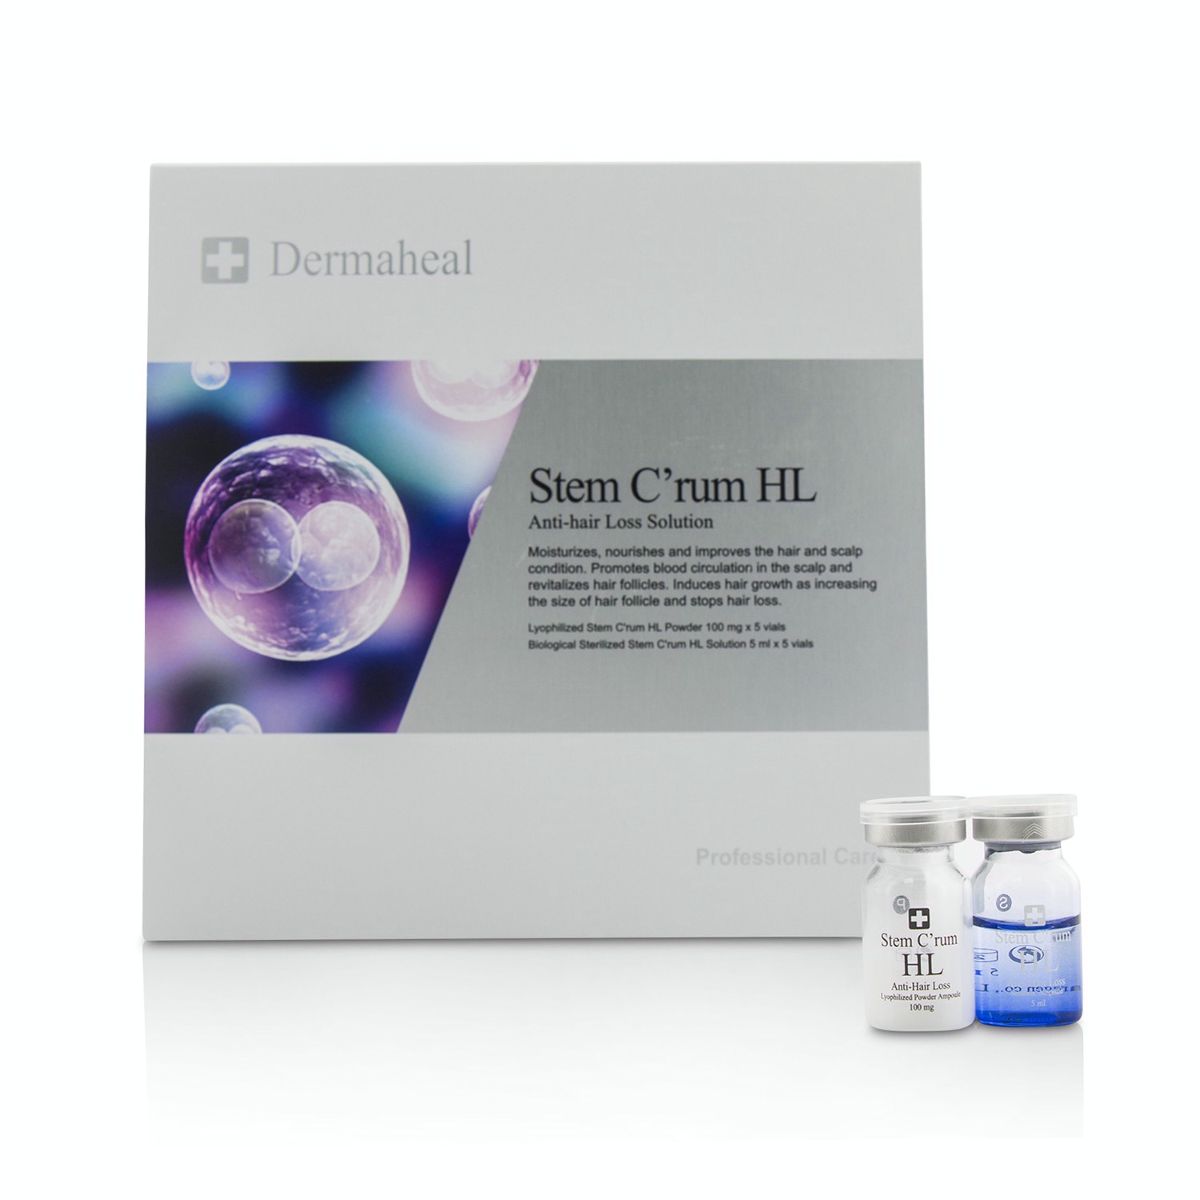 Stem CRum HL Anti-Hair Loss Solution Dermaheal Image